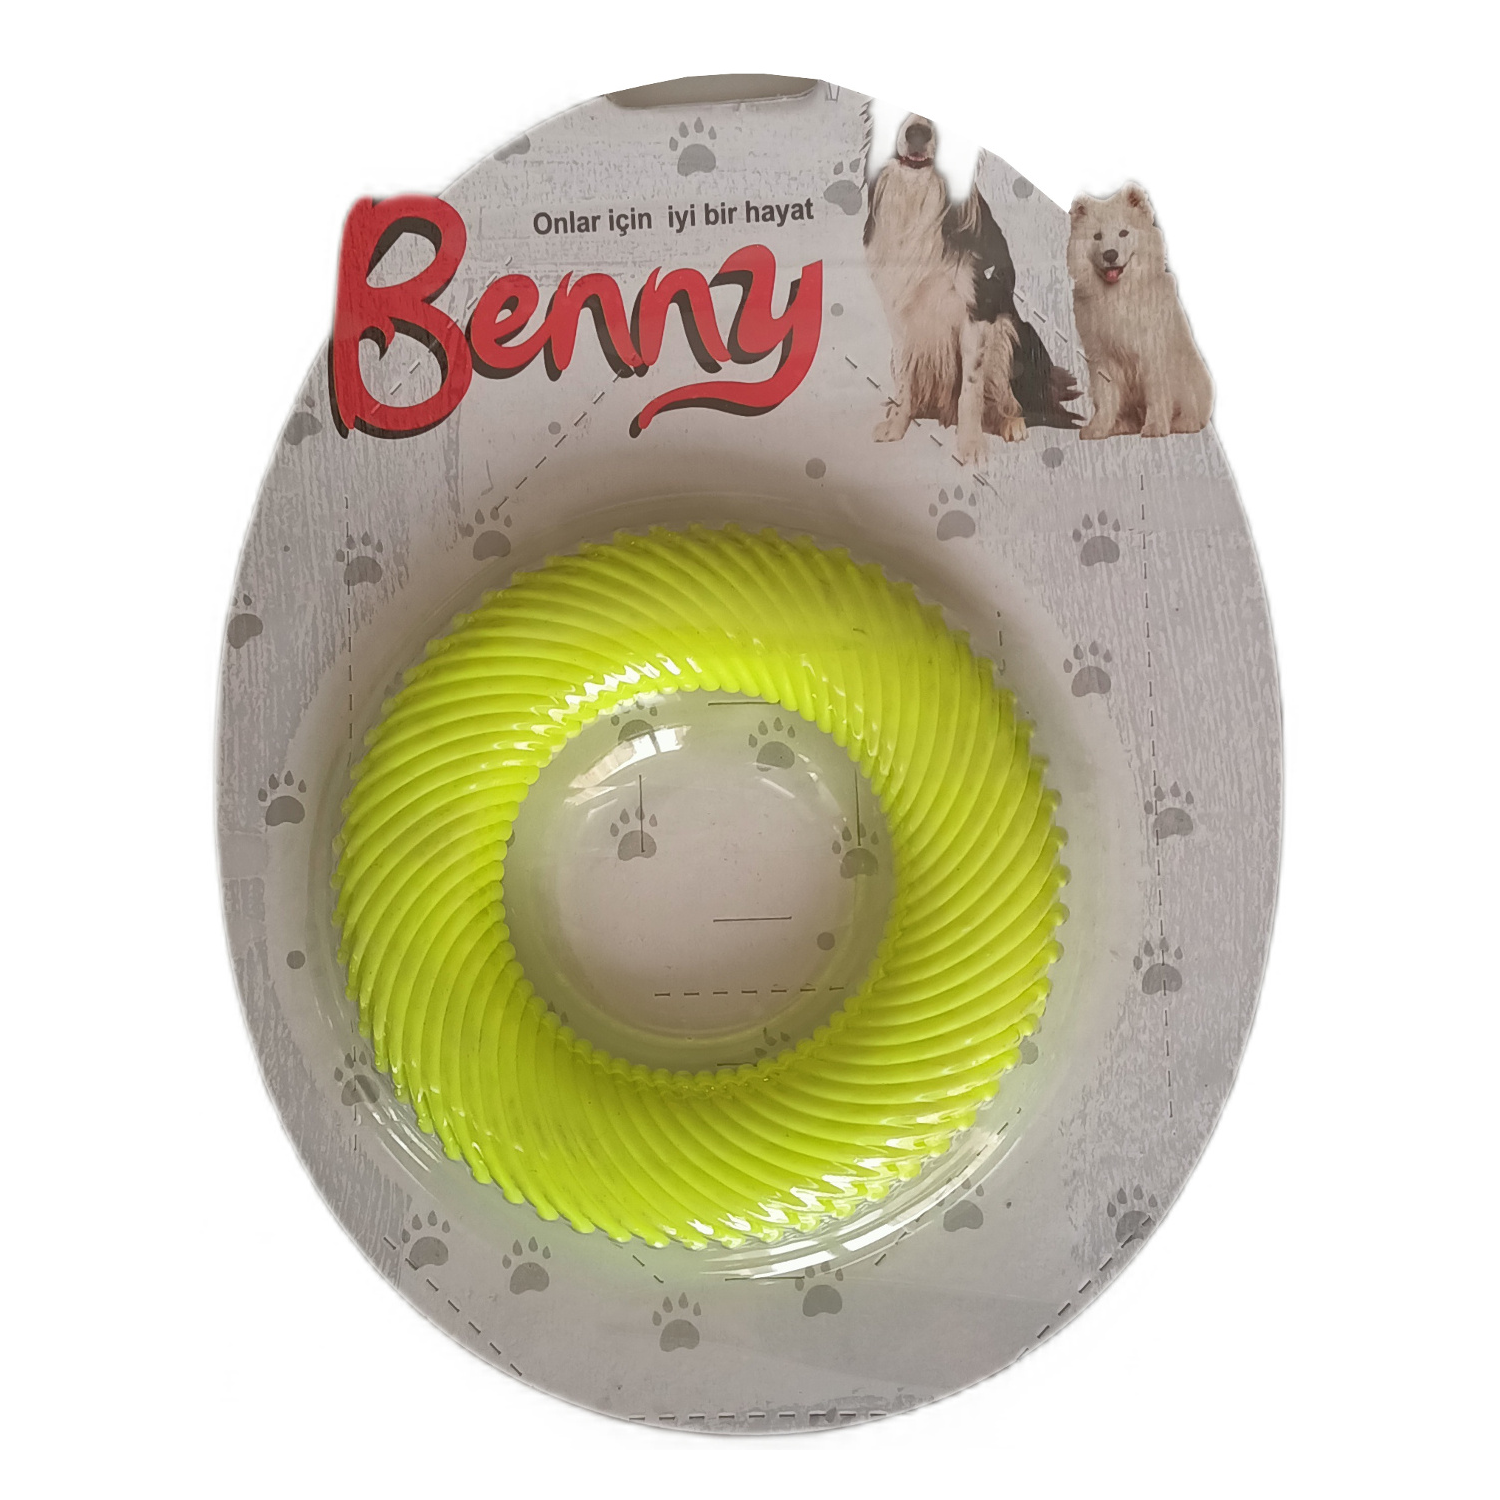 CLZ205 Benny Köpek Oyuncağı Yuvarlak 9,5 cm Sarı